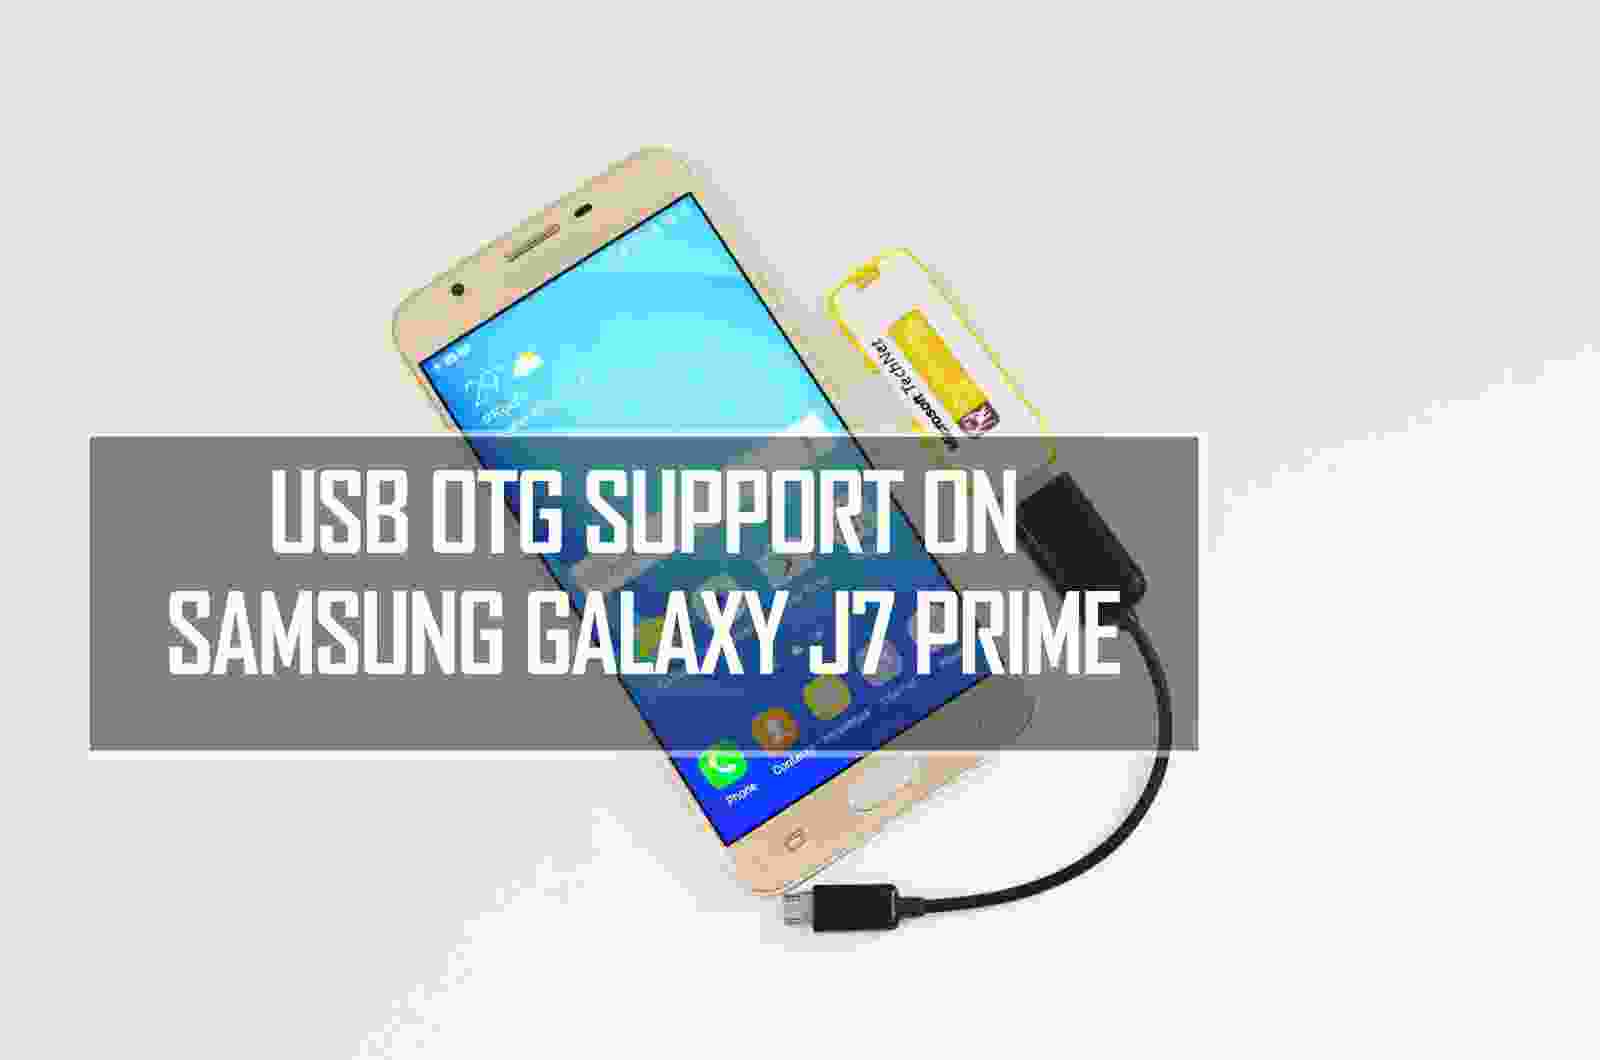 Samsung Galaxy J7 Prime, thủ thuật: Chắc hẳn bạn đang tò mò về những thủ thuật tinh hoa được áp dụng trên chiếc Samsung Galaxy J7 Prime chưa nhỉ? Hãy cùng xem hình ảnh liên quan để khám phá những bí kíp hiệu quả nhất nhé!